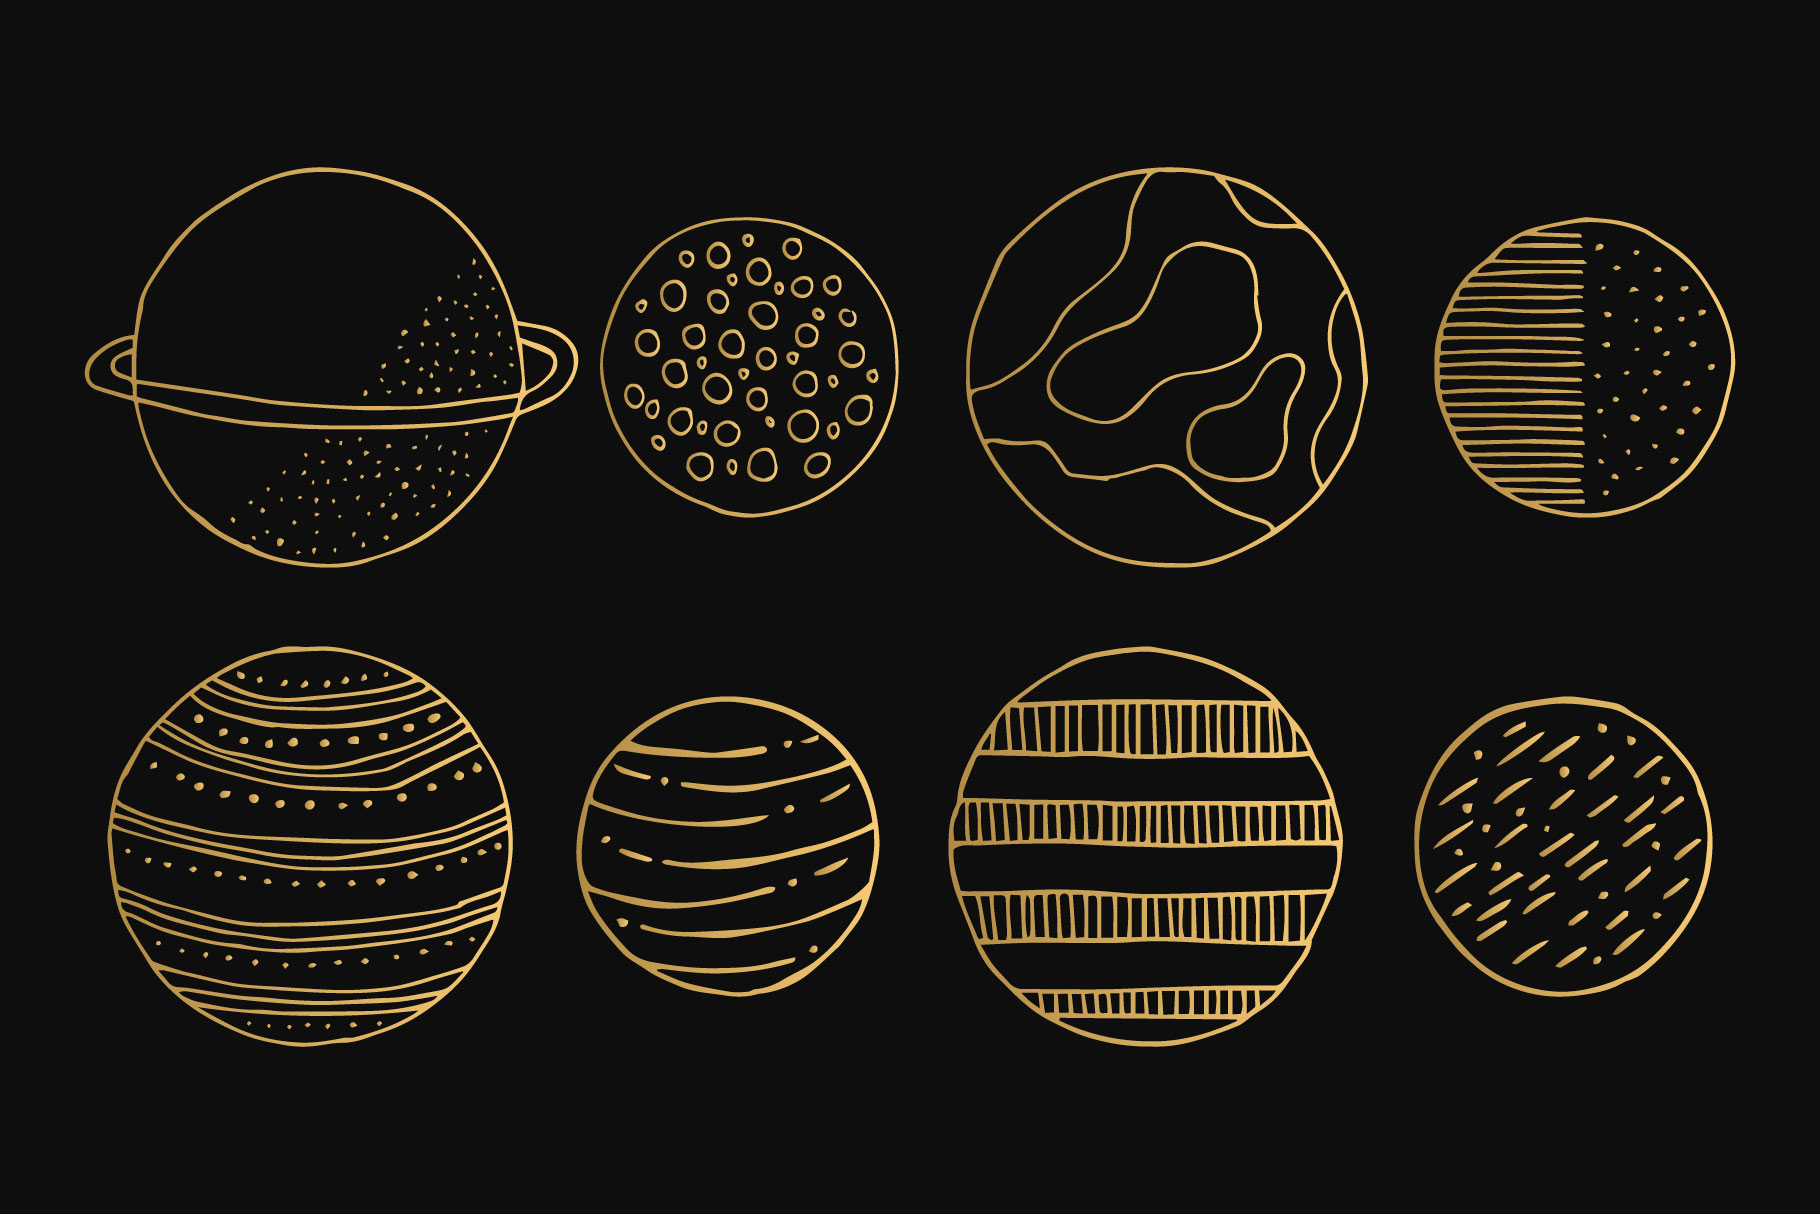 创意抽象烫金太空宇宙星空星座线稿插画图案AI矢量设计素材PNG